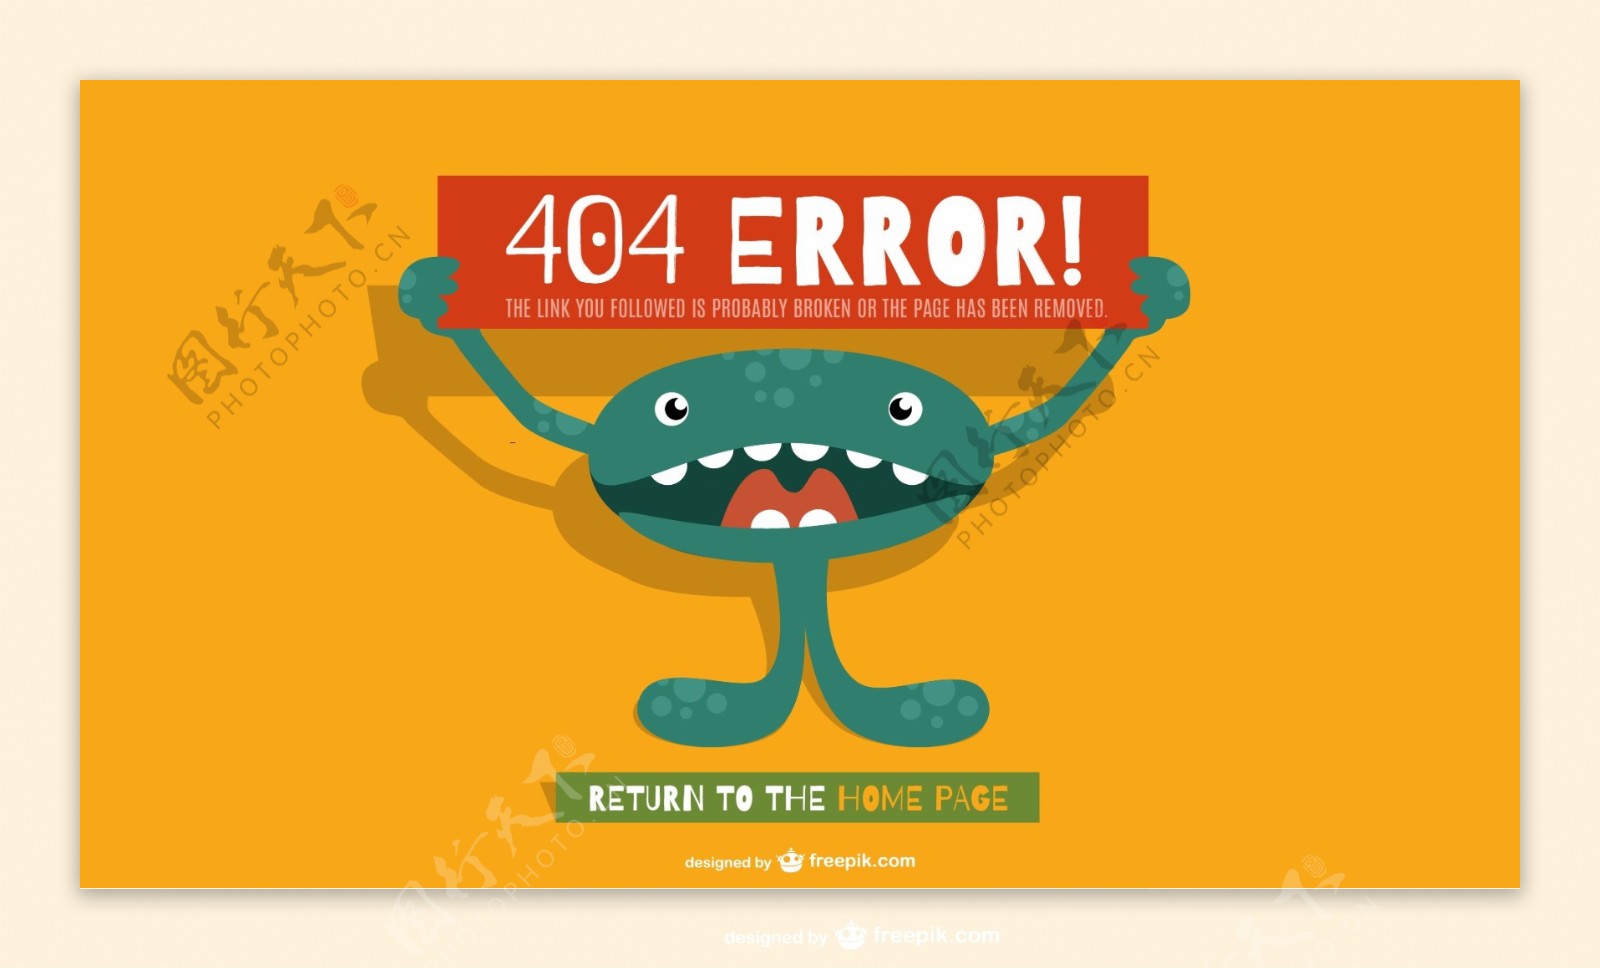 搞怪404错误页面矢量素材